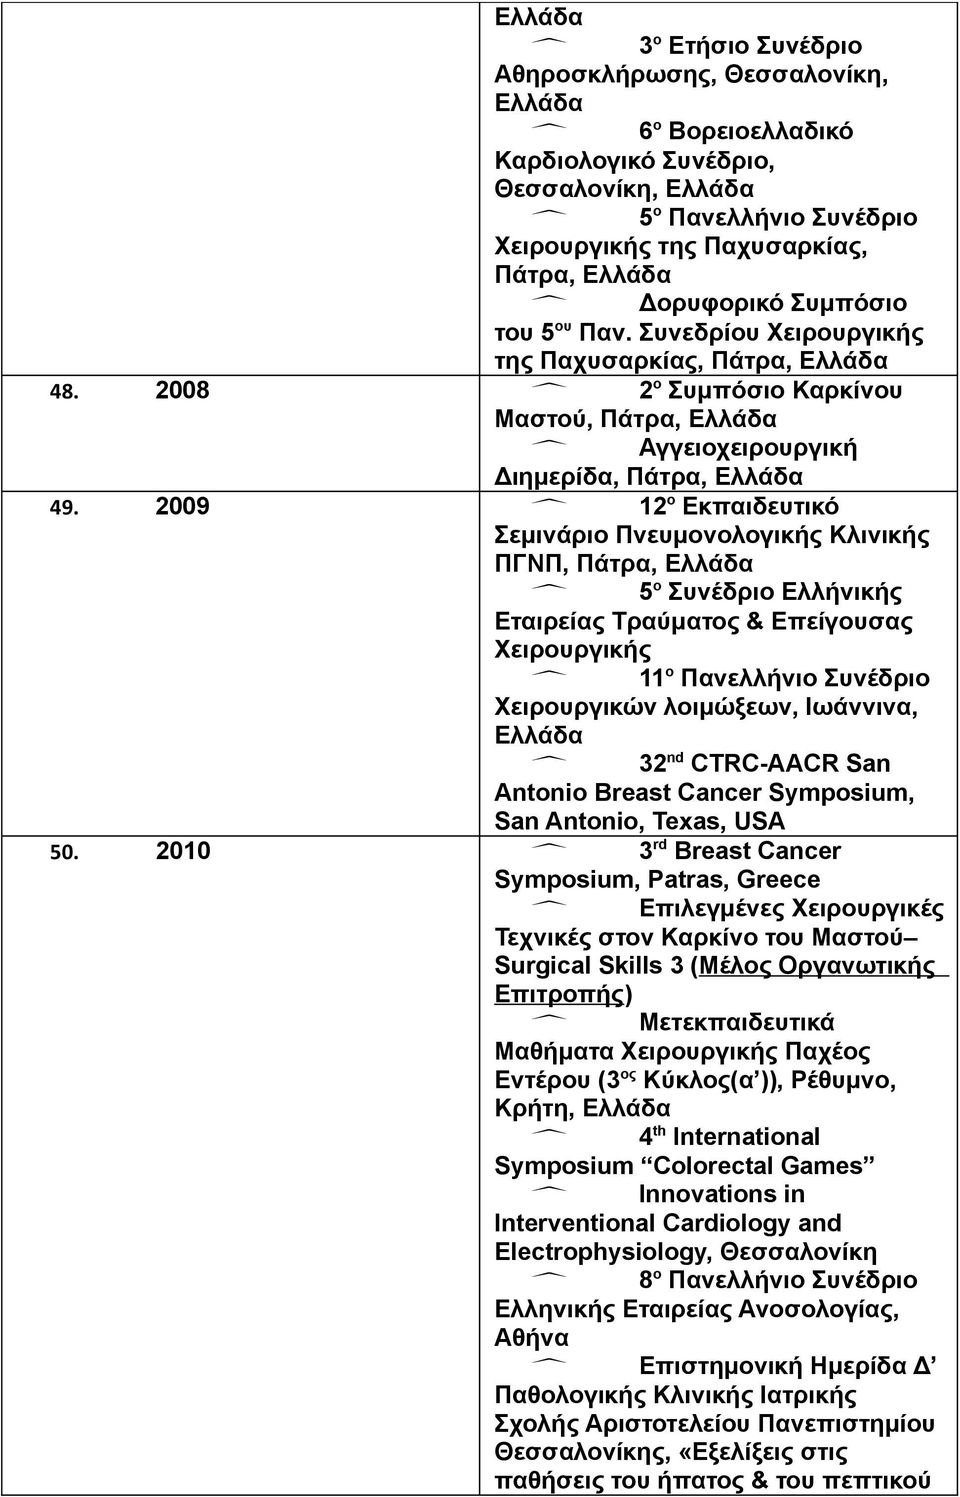 2009 12 ο Εκπαιδευτικό Σεμινάριο Πνευμονολογικής Κλινικής ΠΓΝΠ, Πάτρα, 5 ο Συνέδριο Ελλήνικής Εταιρείας Τραύματος & Επείγουσας Χειρουργικής 11 ο Πανελλήνιο Συνέδριο Χειρουργικών λοιμώξεων, Ιωάννινα,